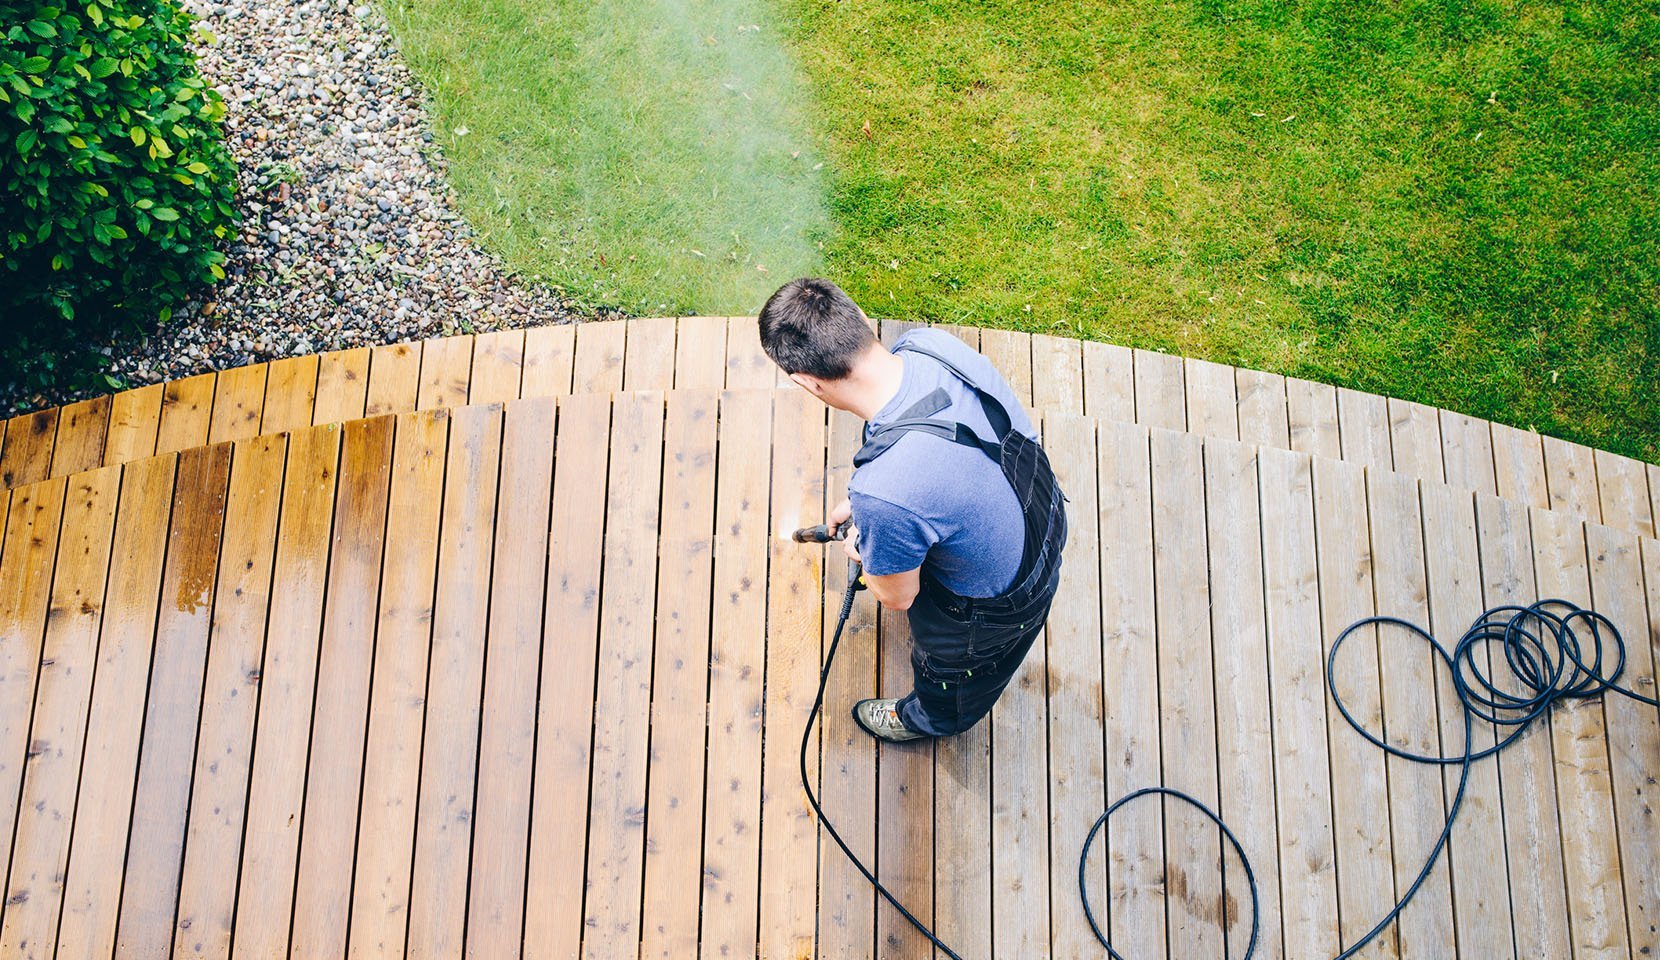 Man powerwashing an outdoor deck